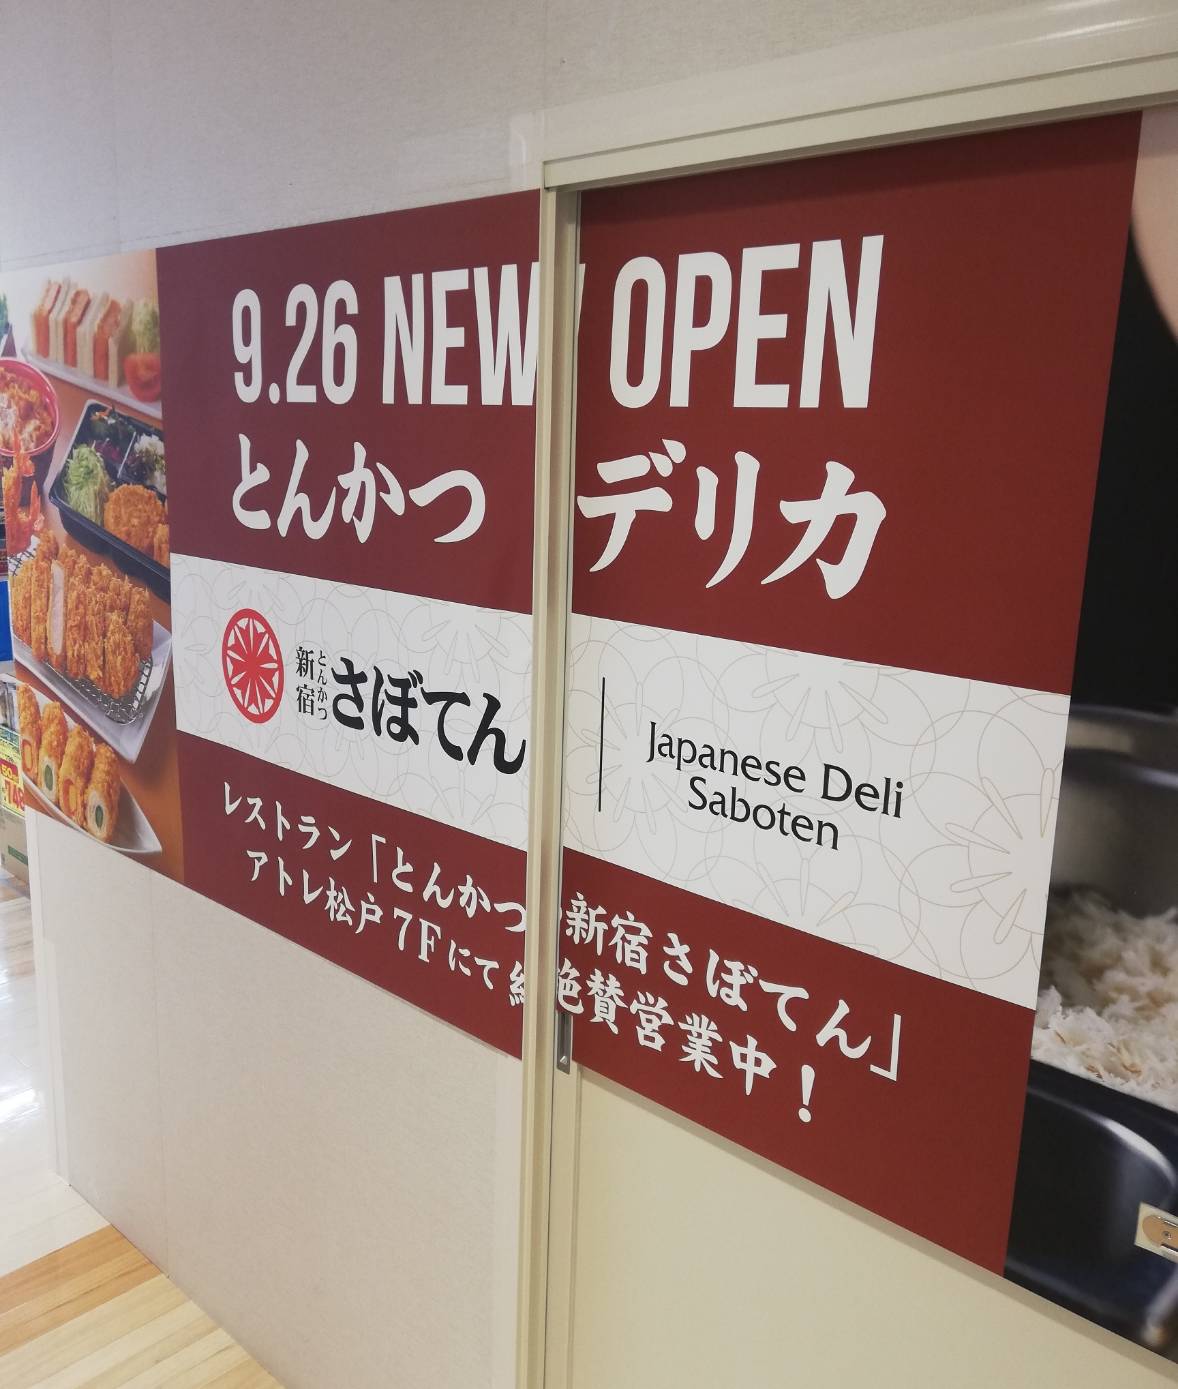 アトレ松戸にとんかつ新宿さぼてんのデリカ店も9月26日オープン 現地も確認 松戸ロード 松戸の地域情報